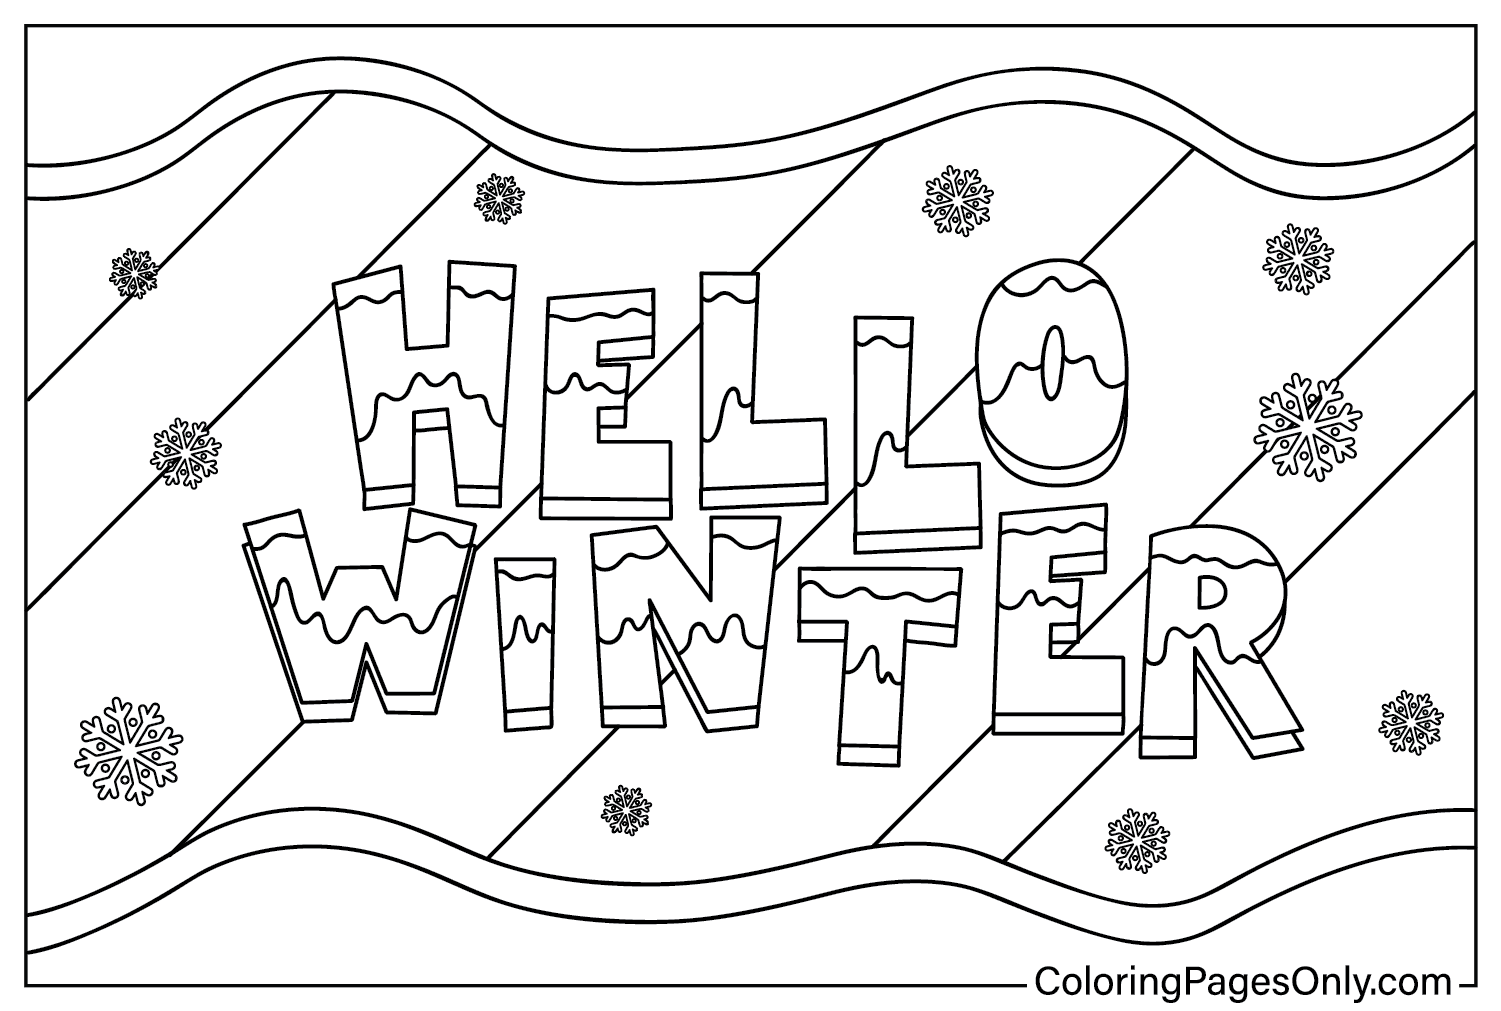 Página para colorear de invierno para imprimir gratis